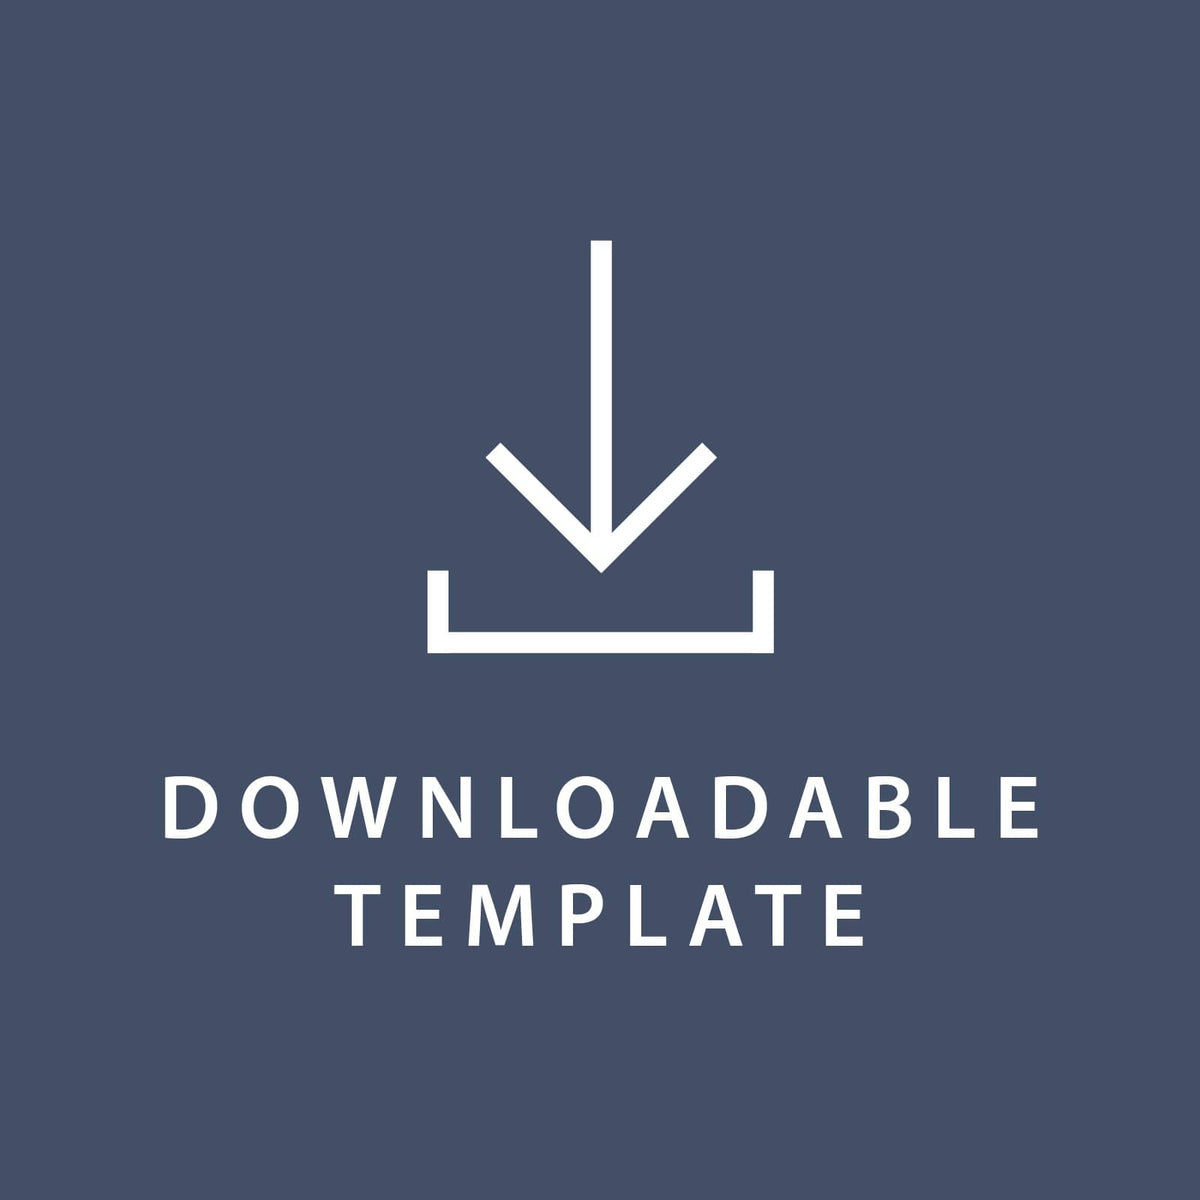 Template for 5 x 7 Invitations Gartner Studios Template tmplt0236